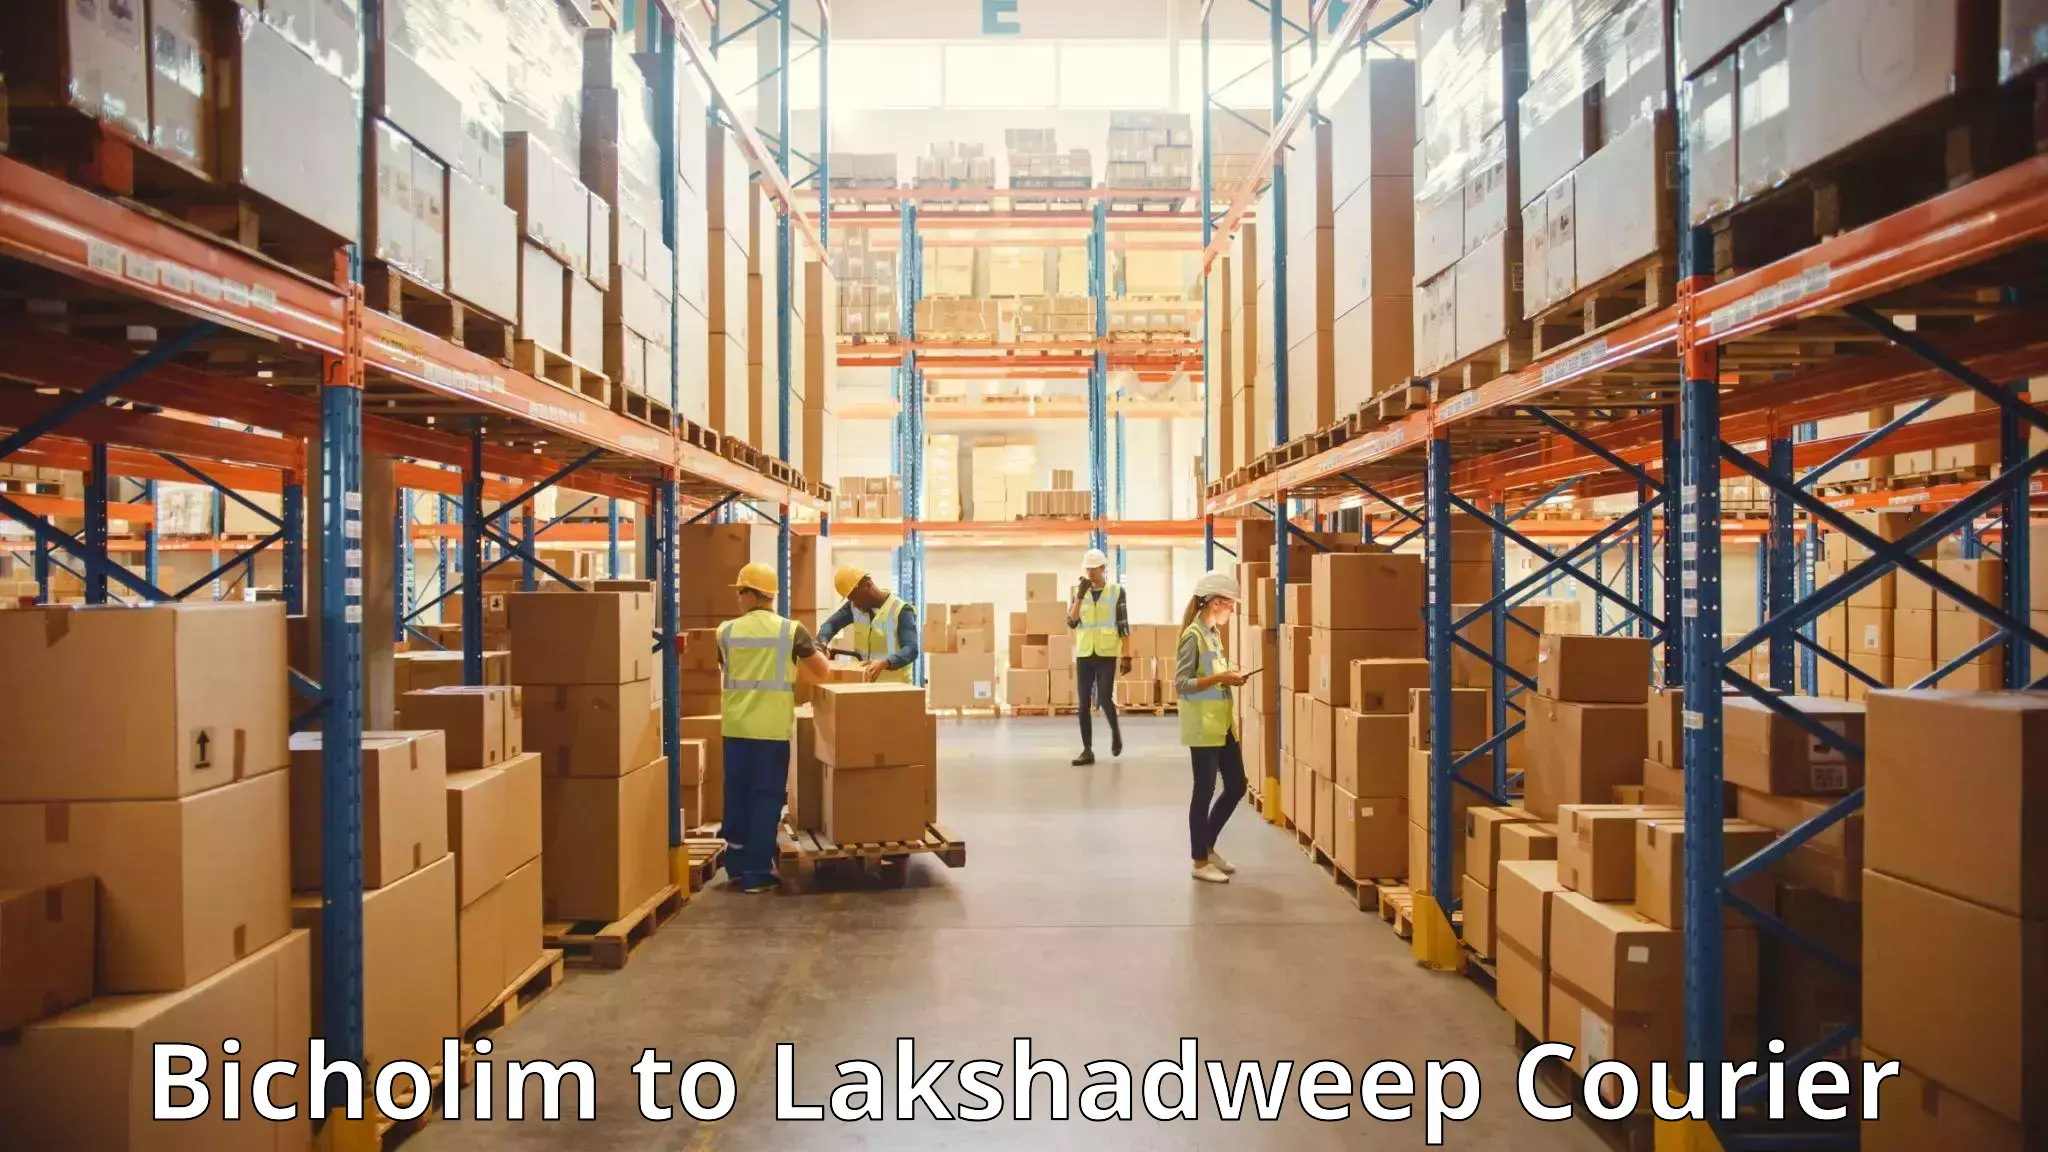 Luggage shipping service Bicholim to Lakshadweep